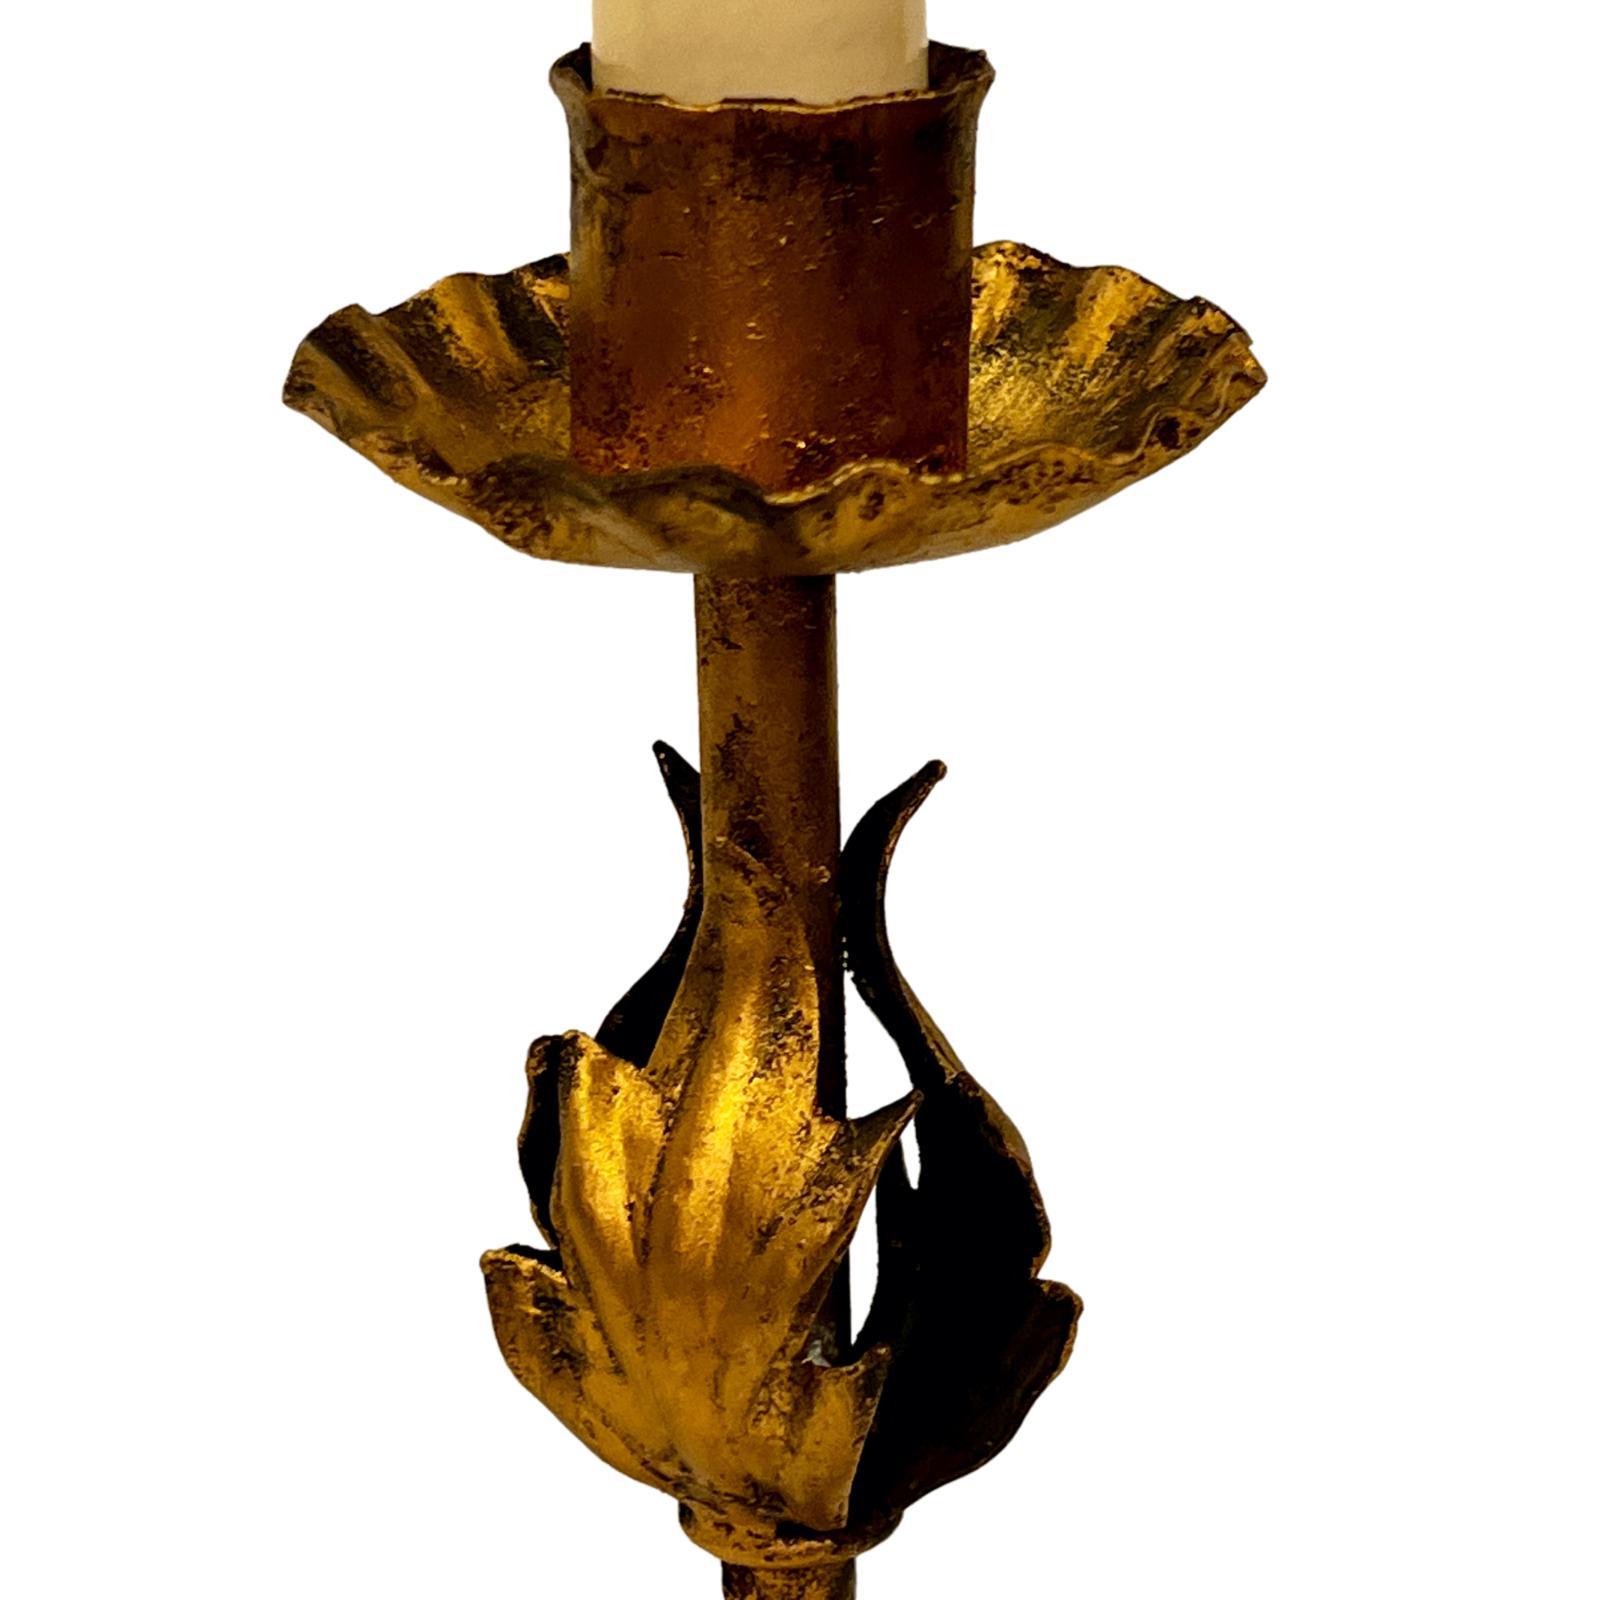 CIRCA 1900 Italienischer vergoldeter Metallkerzenhalter, elektrifiziert als Lampe.

Abmessungen:
Höhe des Körpers: 10.5